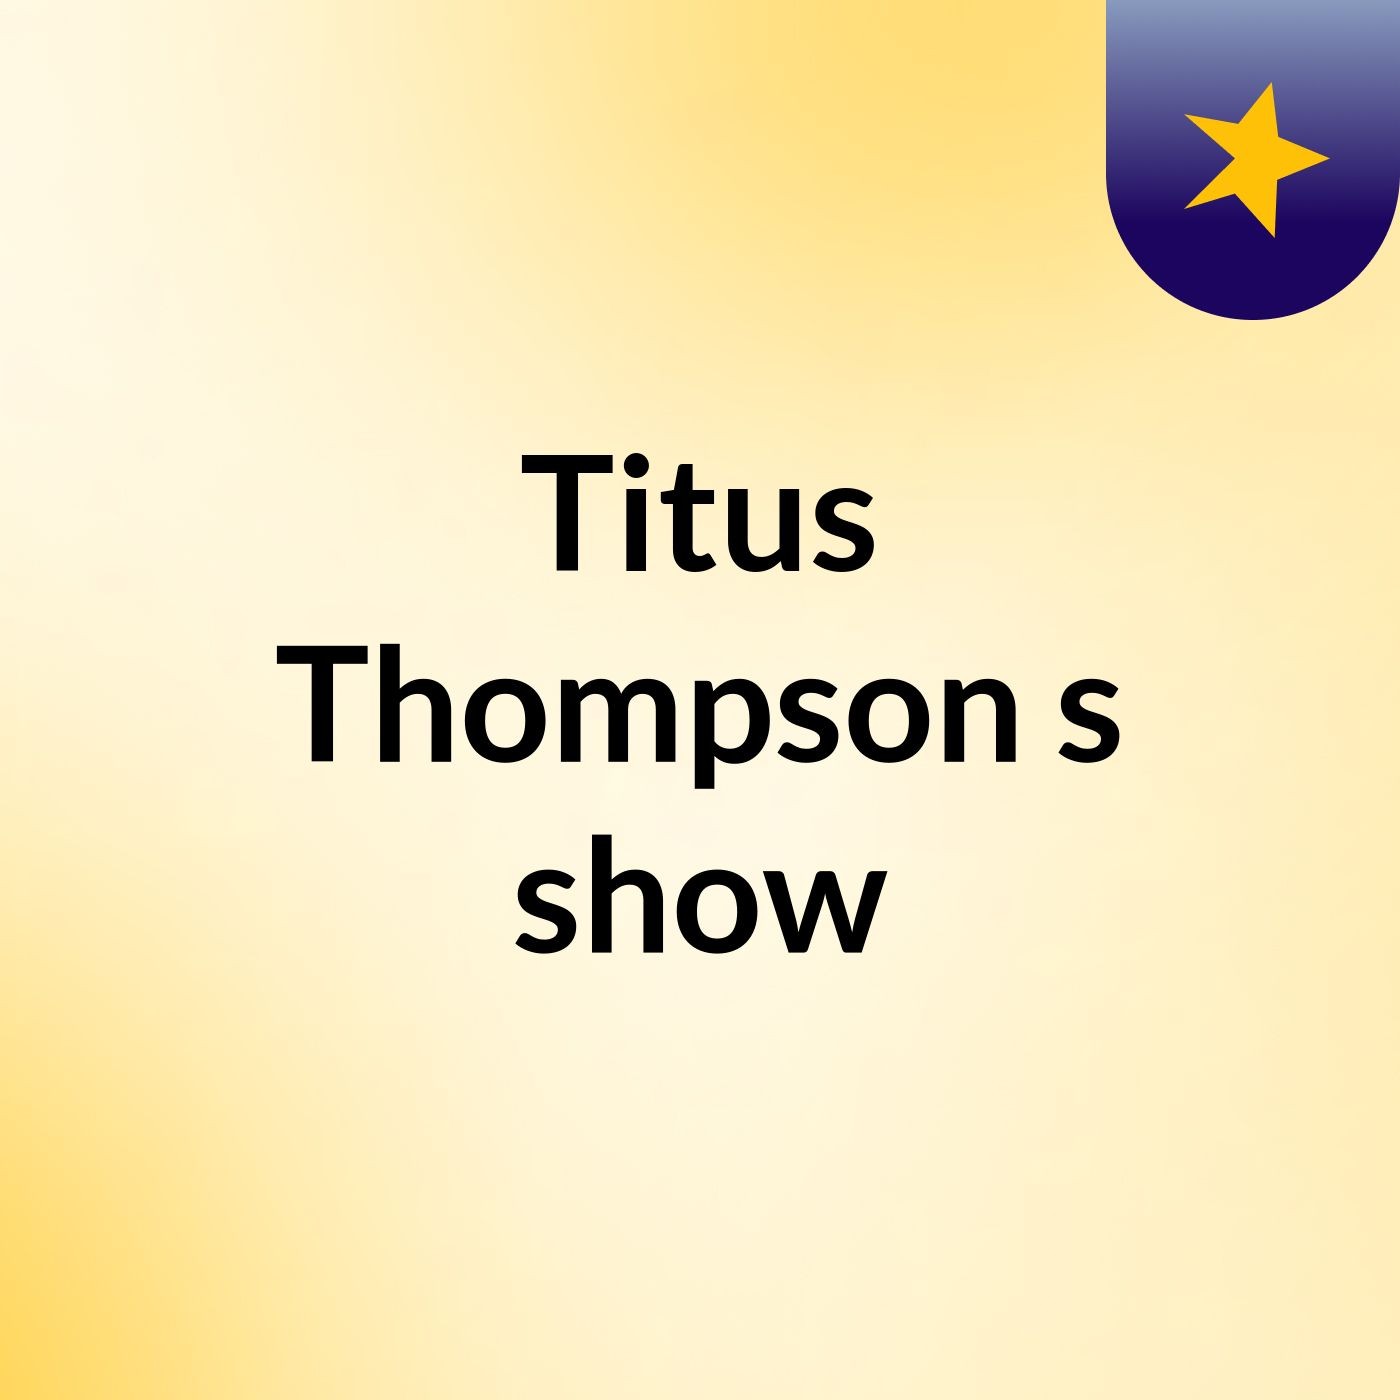 Titus Thompson's show